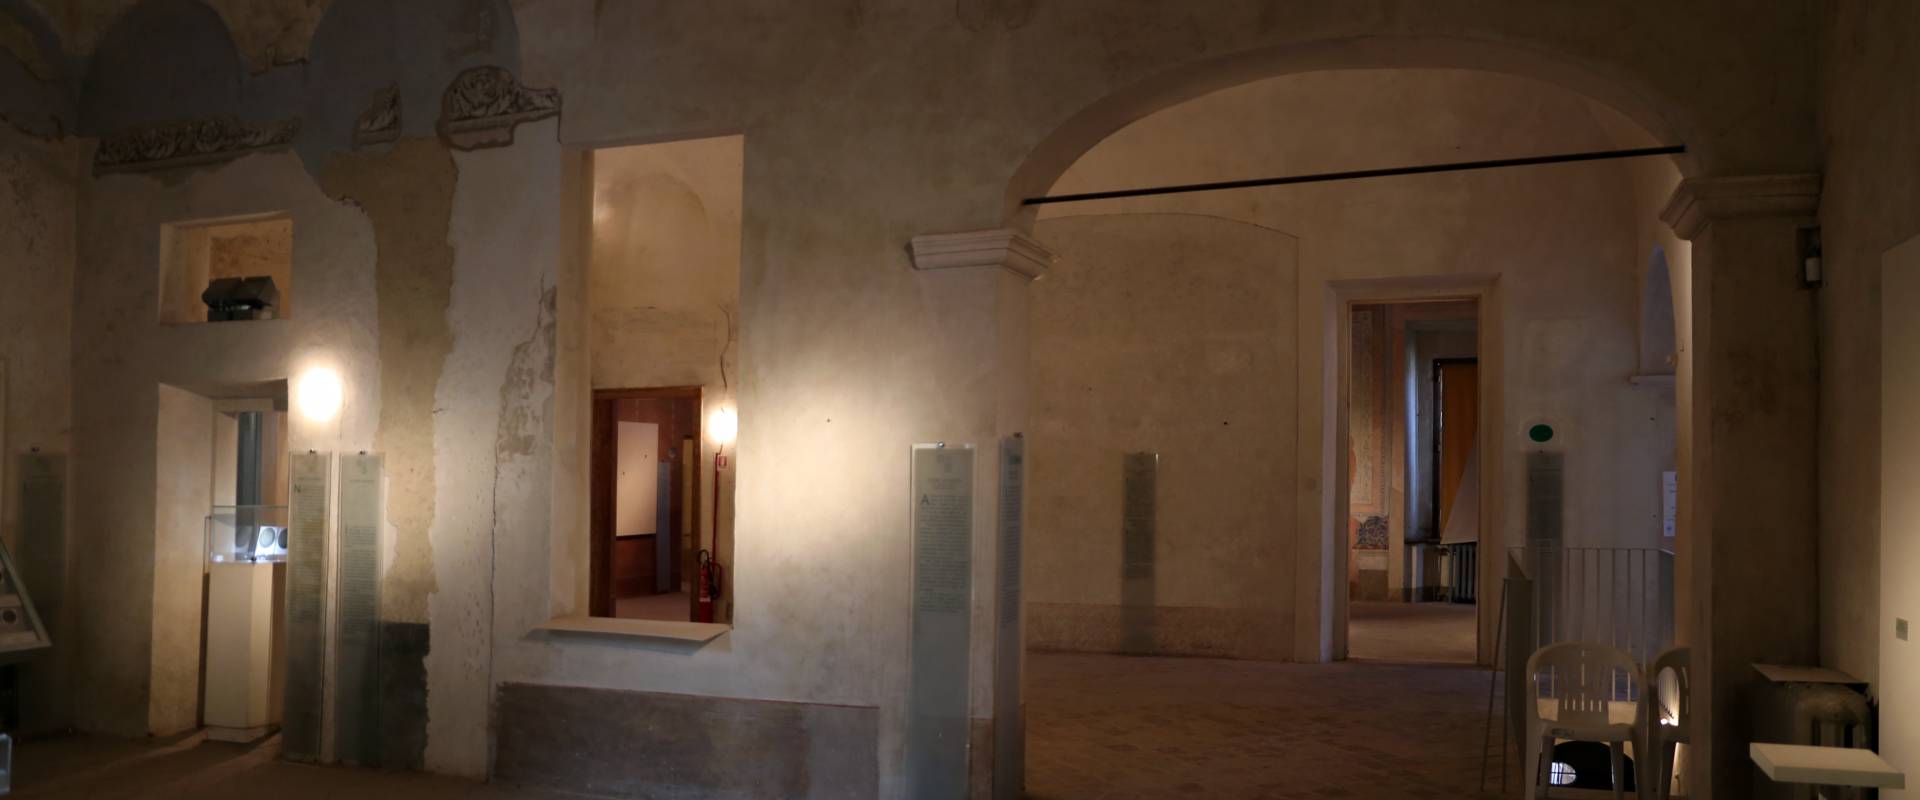 Guastalla, palazzo ducale, interno, 01 foto di Sailko